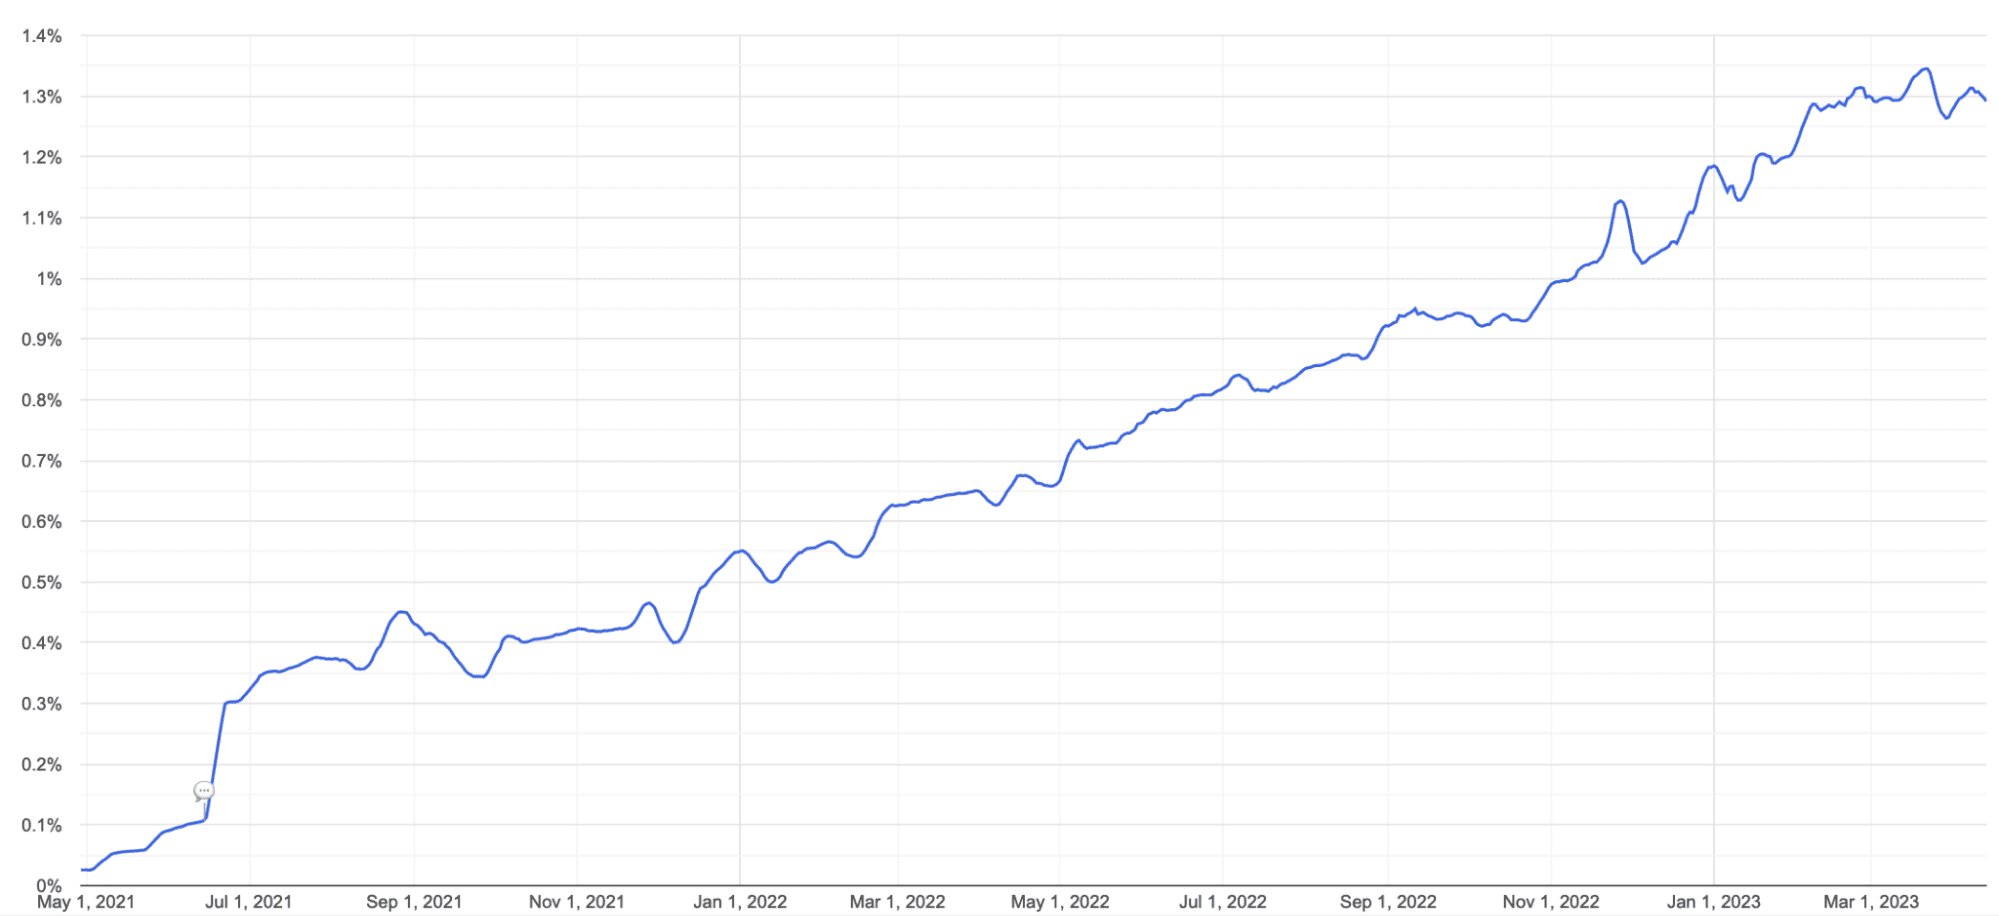 Линейный график использования AVIF в Chrome с мая 2021 года по март 2023 года. Поддержка неуклонно росла с 0% до чуть менее 1,4%.